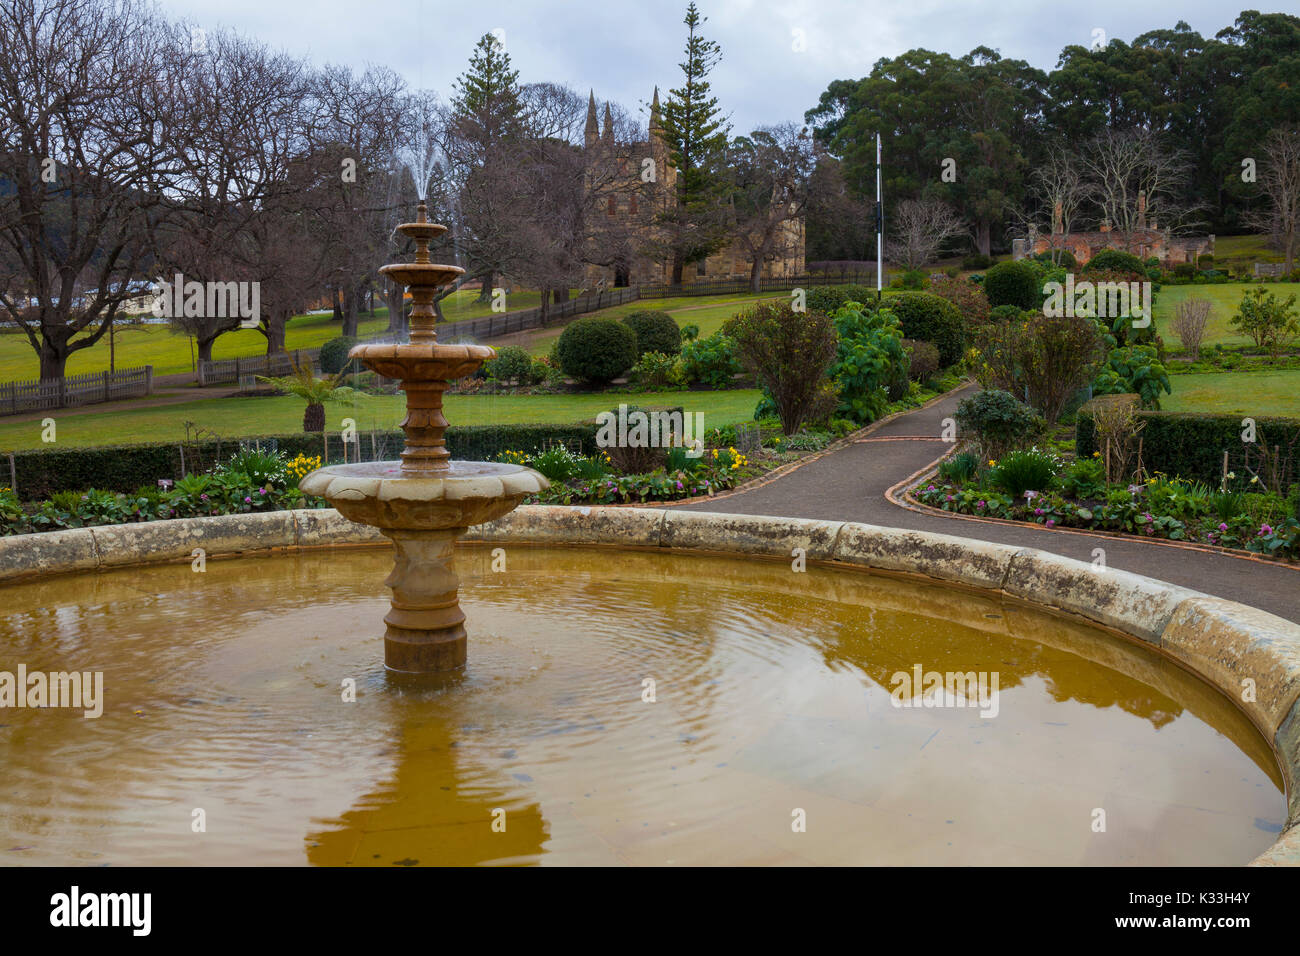 Jardins du gouvernement (c.1846) - Port Arthur - Tasmanie - Australie Banque D'Images